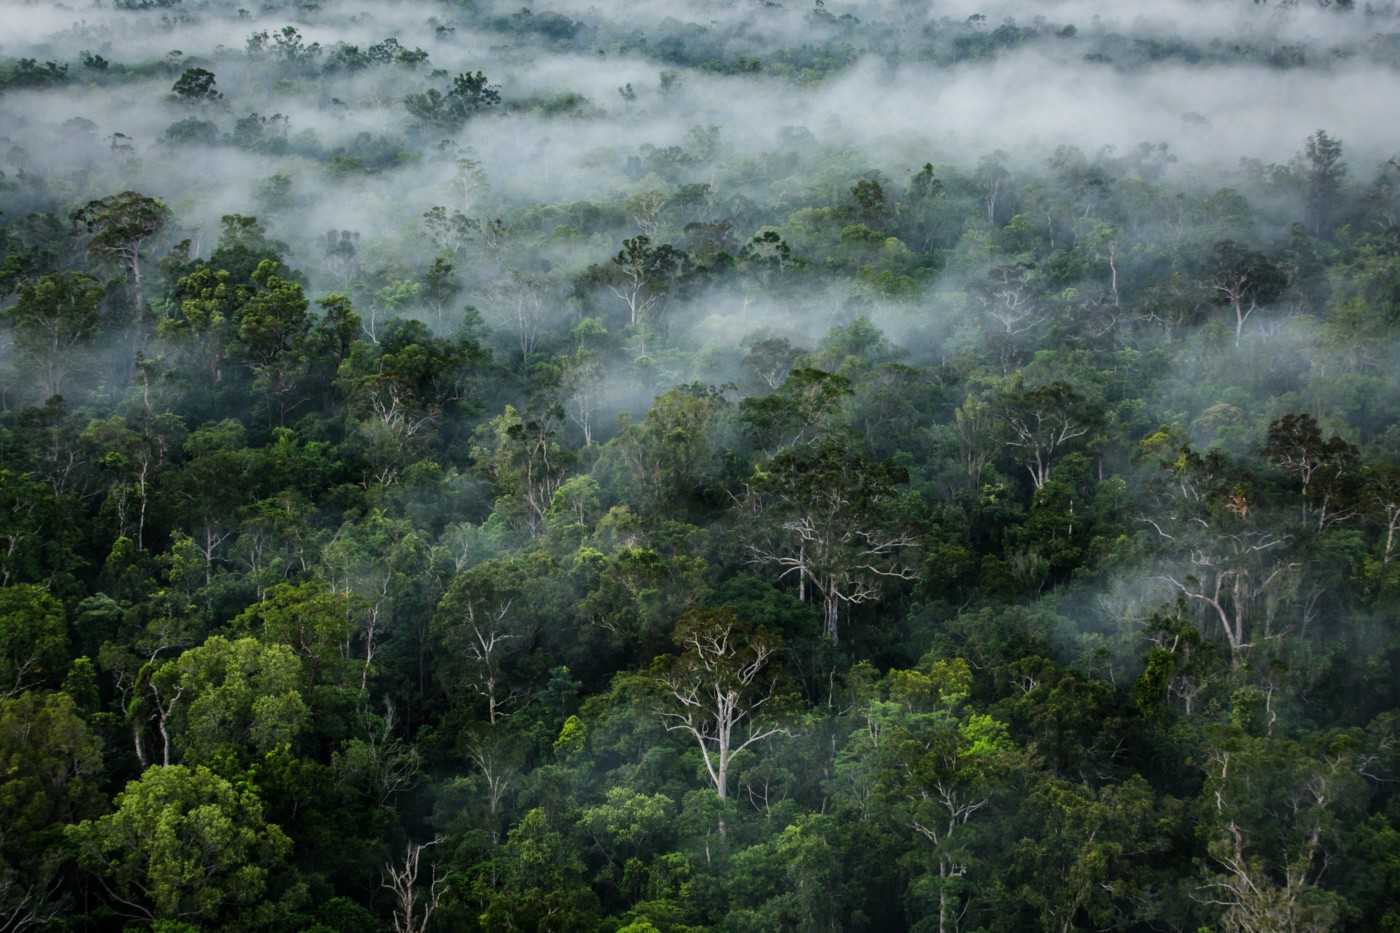 Rainforest in Boven Digoel, 2018. By Ulet Ifansasti for Greenpeace.